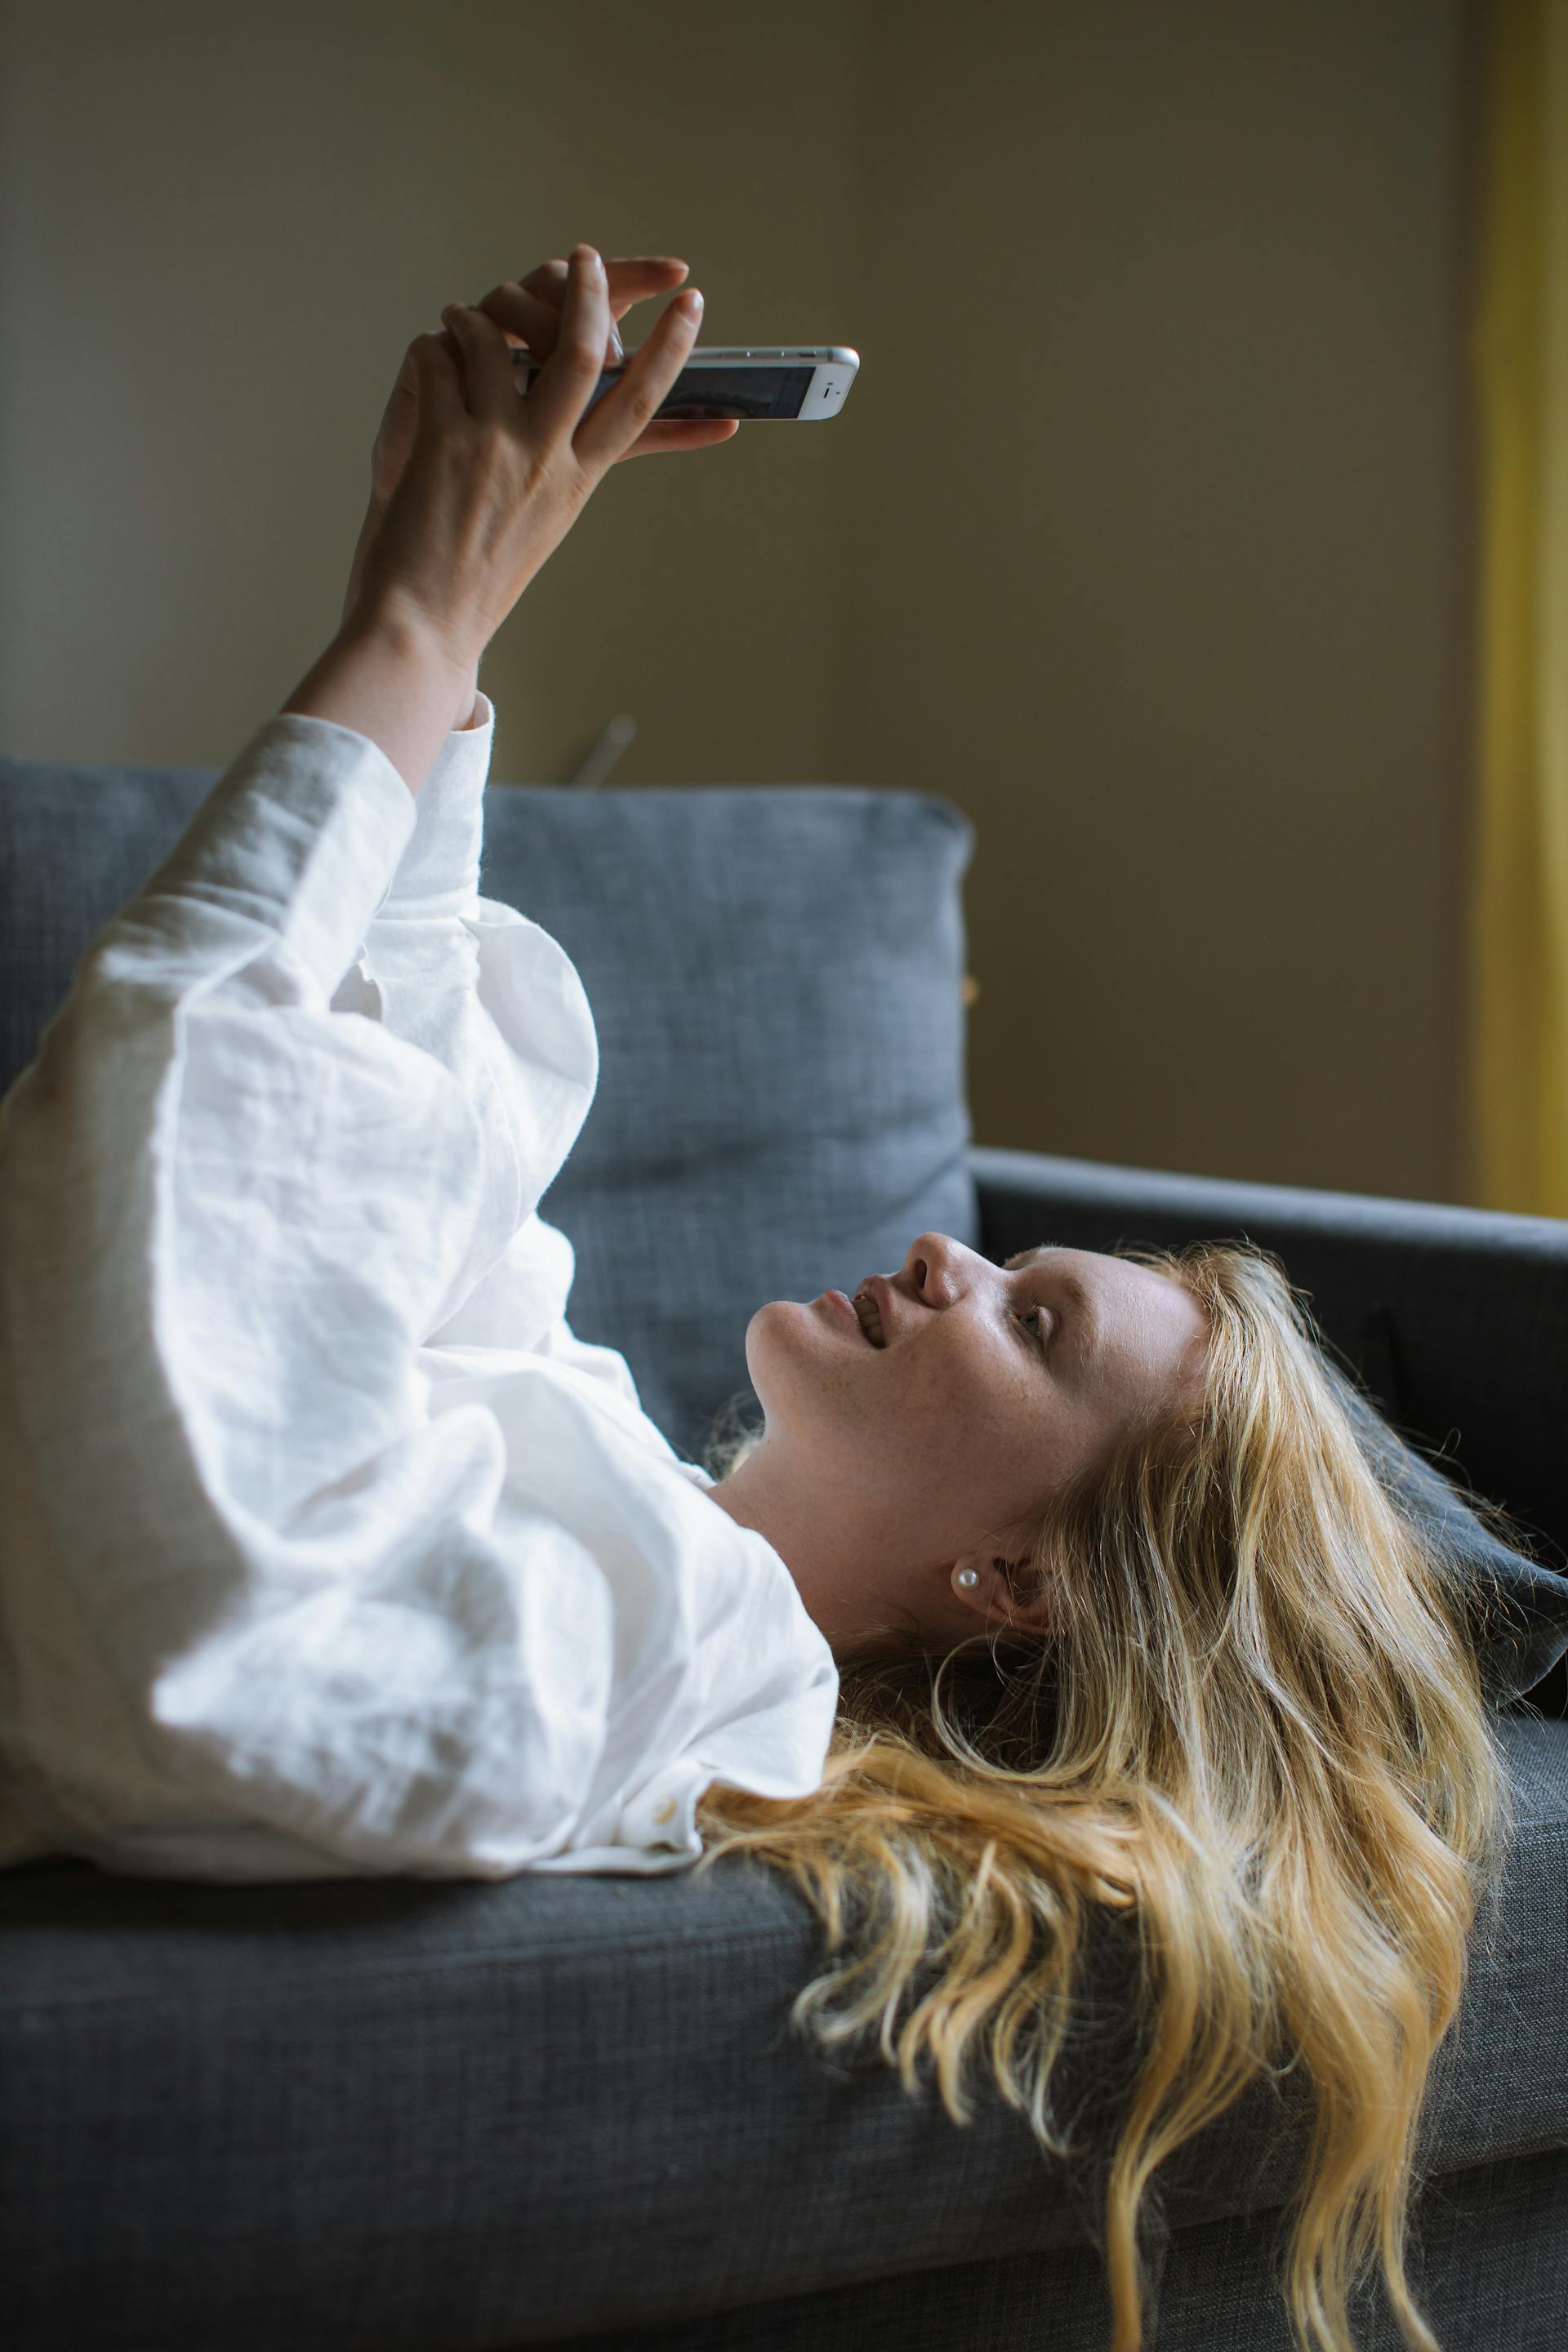 Une jeune femme utilise son téléphone alors qu'elle est allongée sur un canapé | Source : Pexels